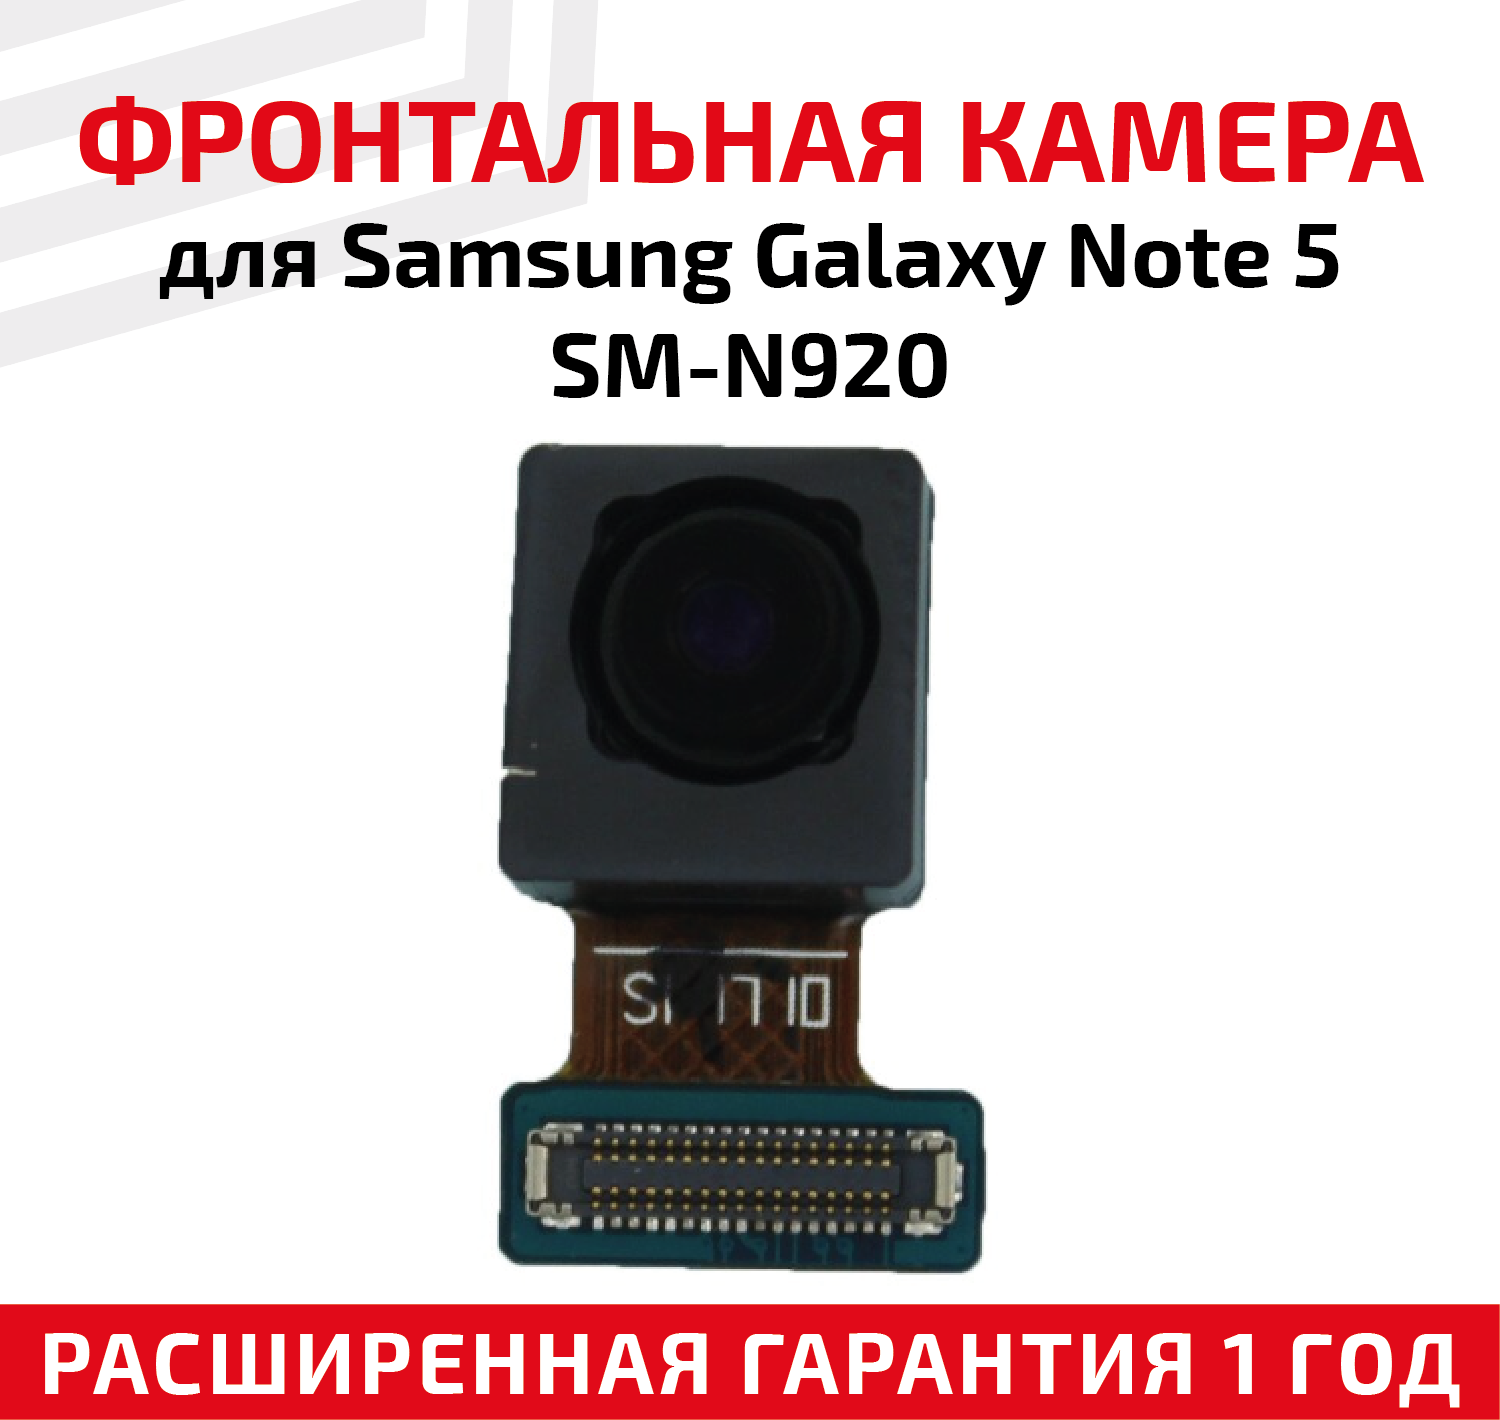 Шлейф фронтальной камеры для мобильного телефона (смартфона) Samsung Galaxy Note 5 (N920F)